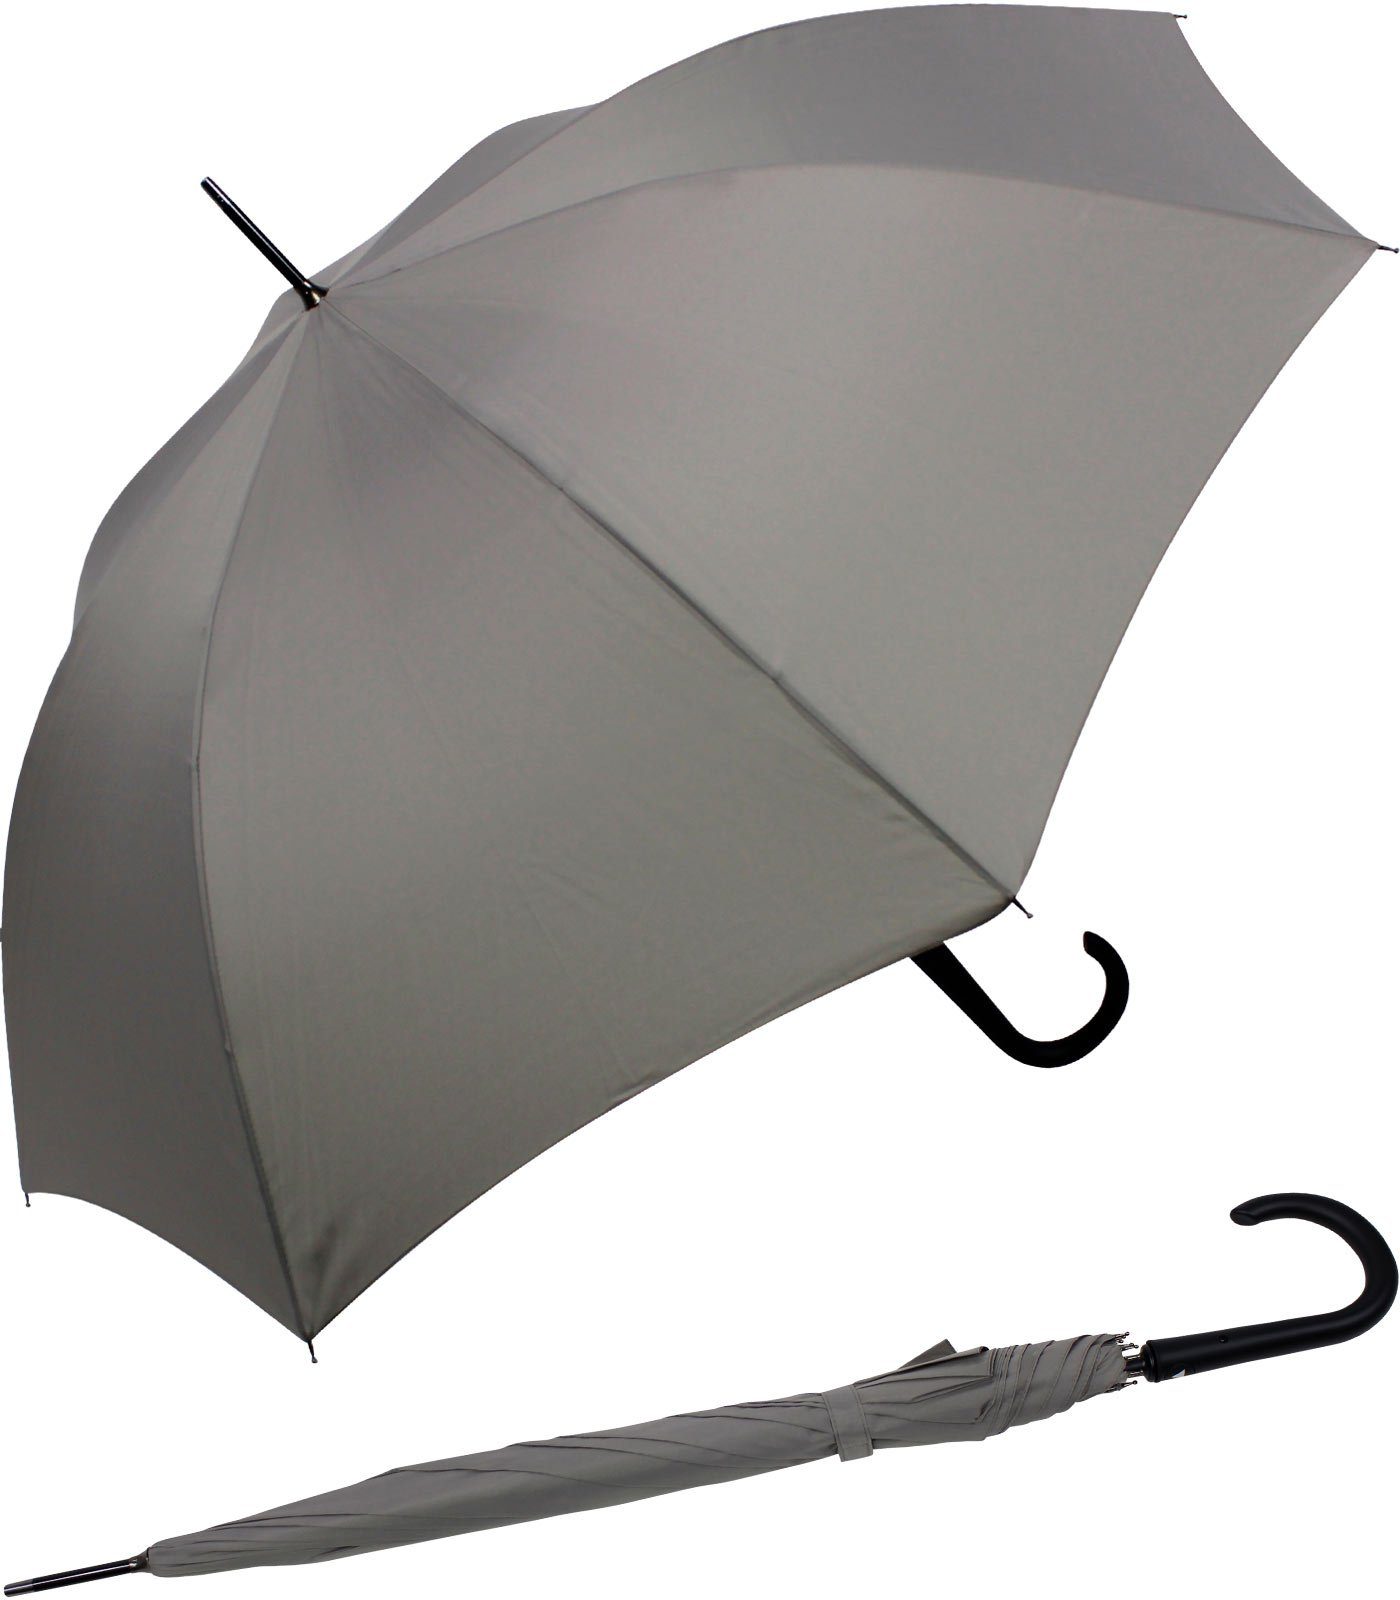 RS-Versand Langregenschirm großer stabiler Regenschirm mit Auf-Automatik, Stahl-Fiberglas-Gestell, integrierter Auslöseknopf grau